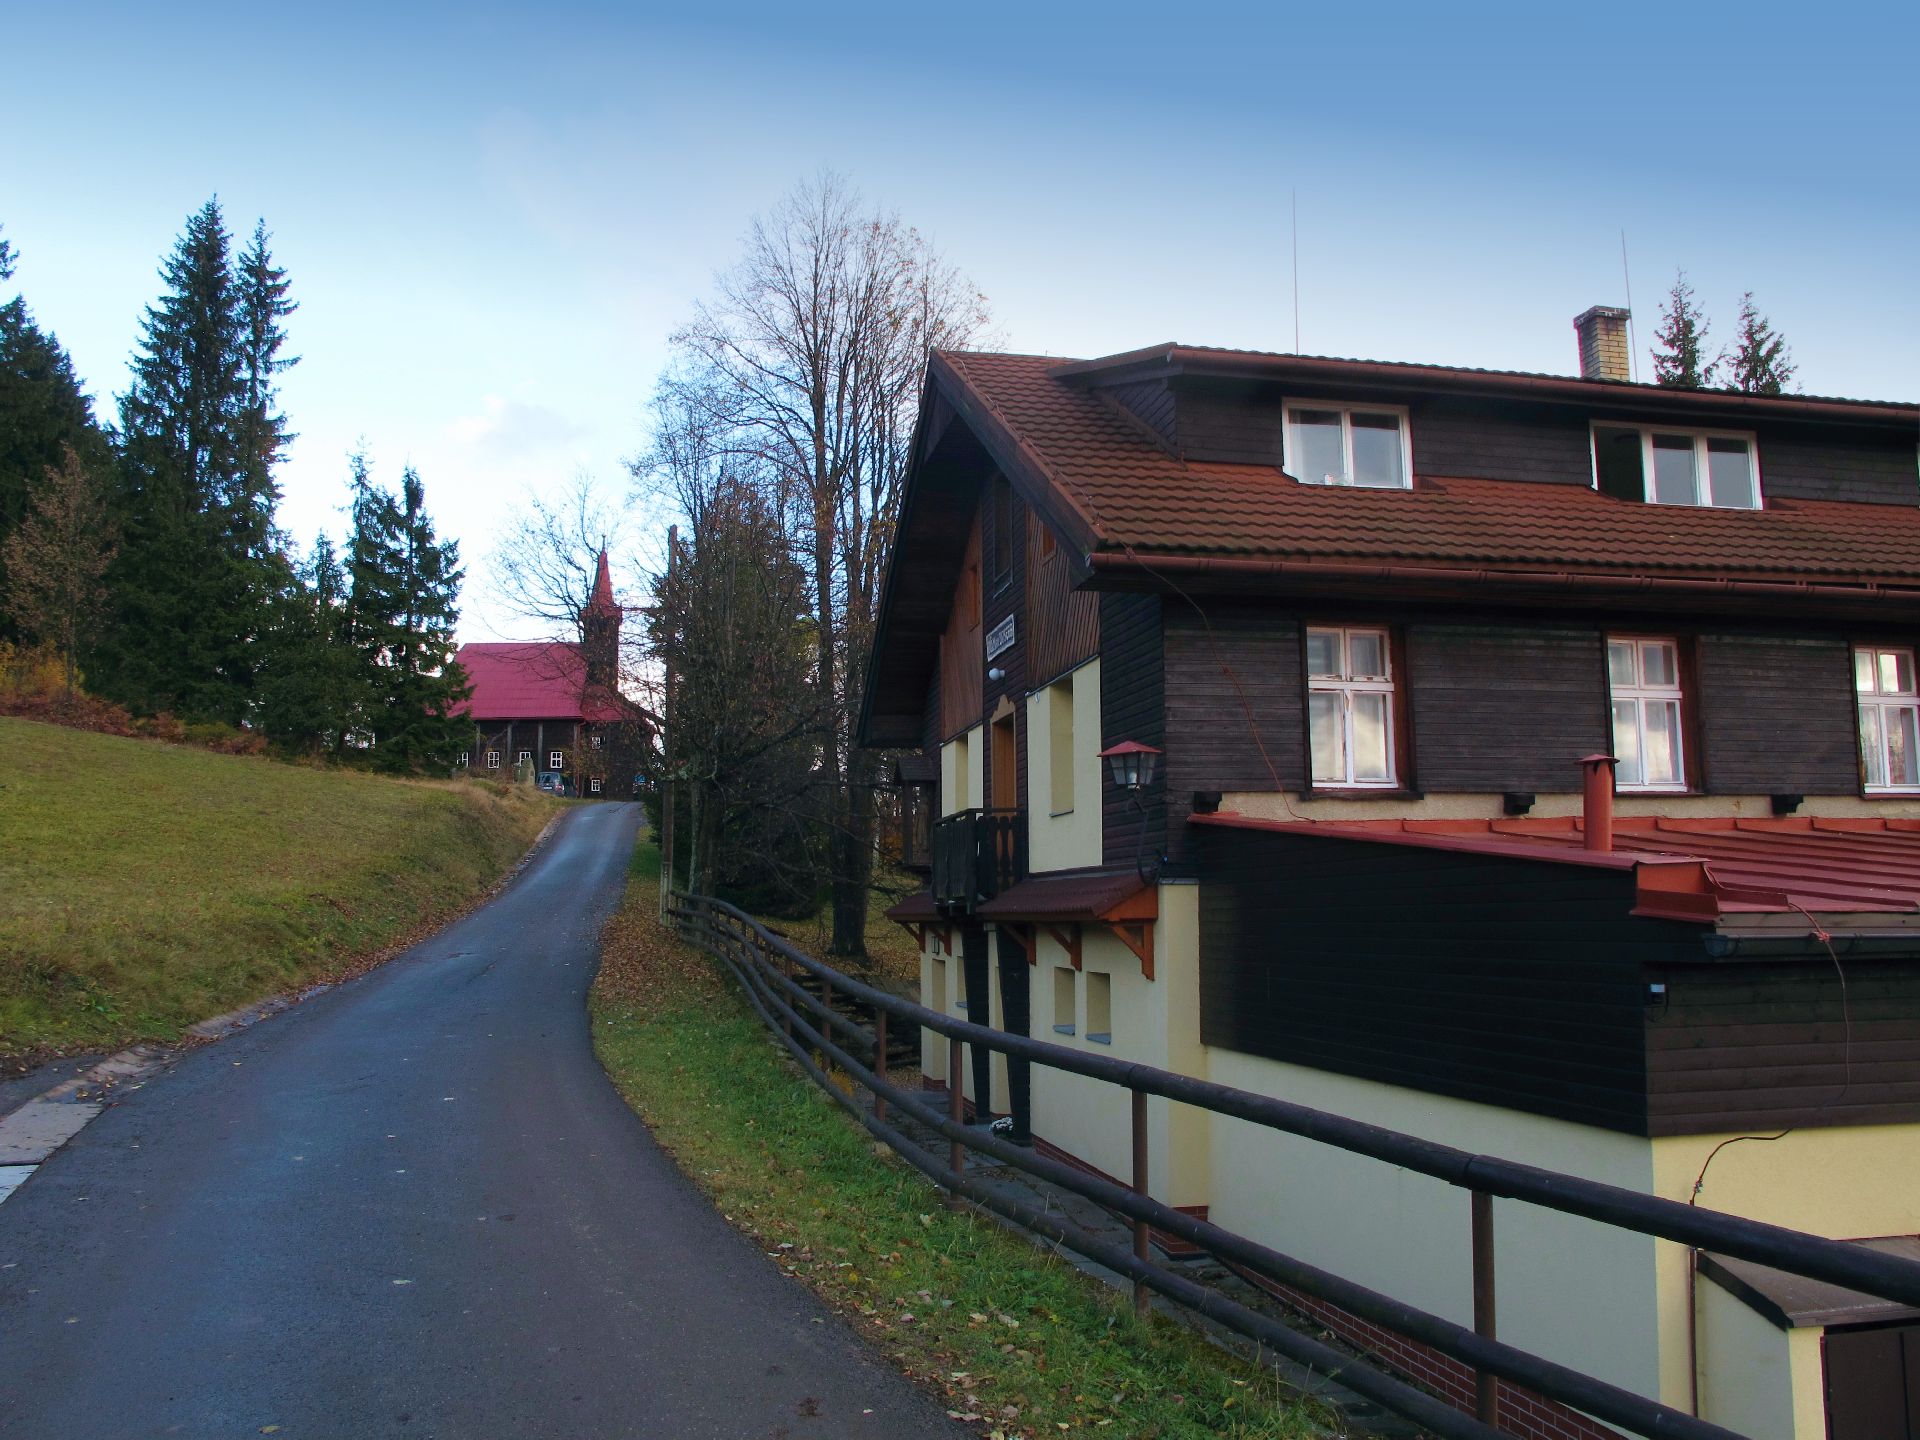 Staré Hamry - Gruň, Górska chata turystyczna Dom św. Józefa na Gruniu - 